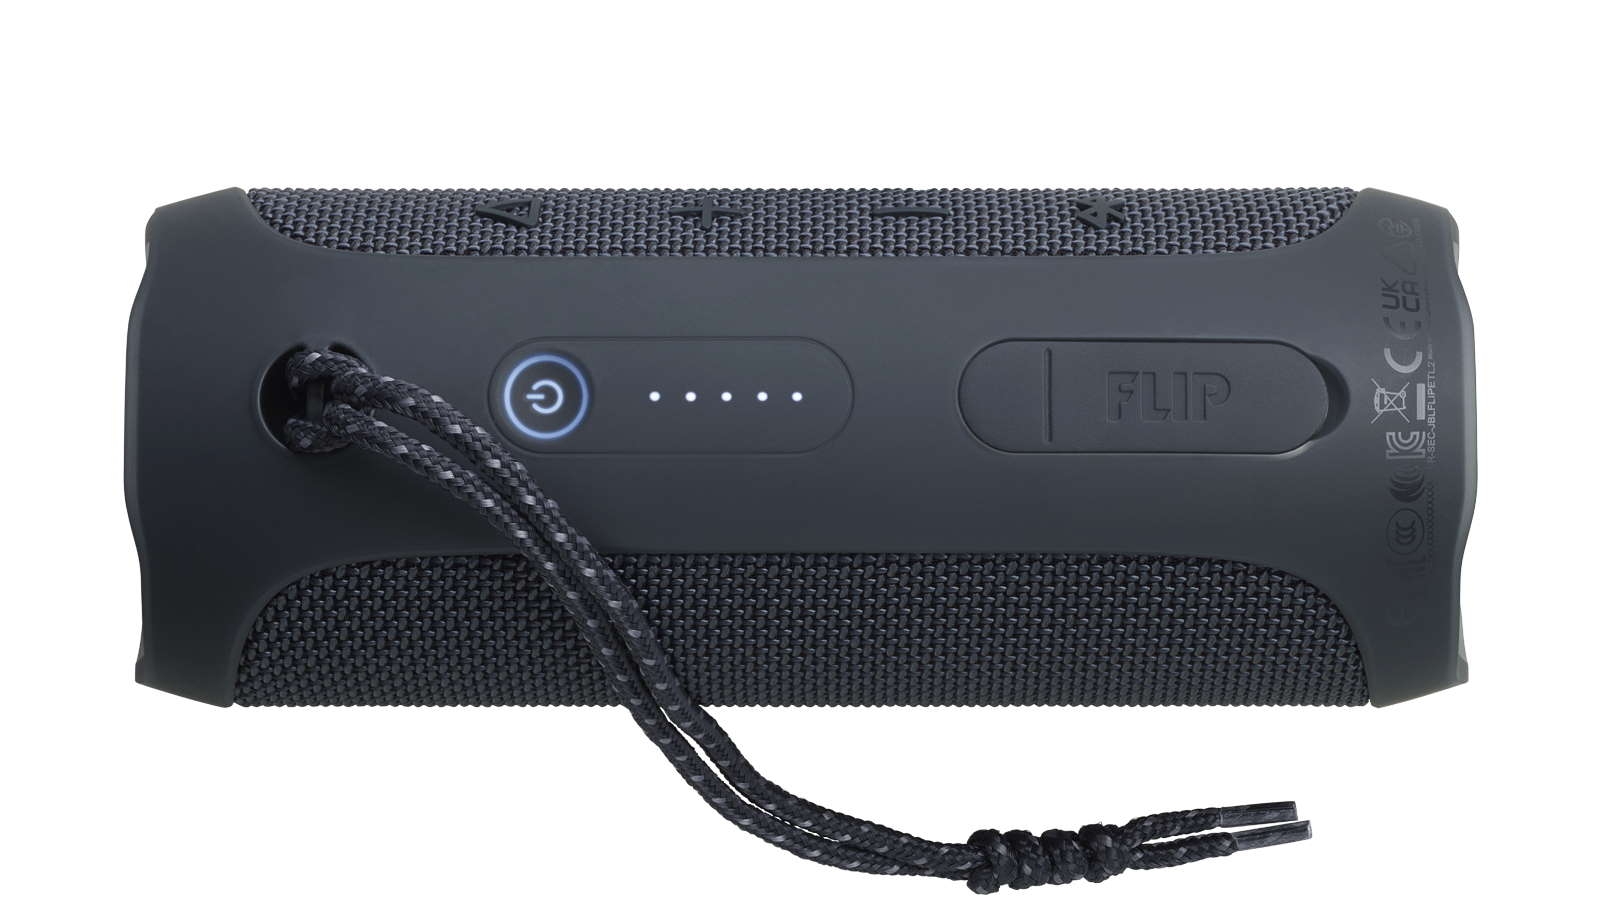 JBL Flip Essential 2 Portable Wateproof Speaker